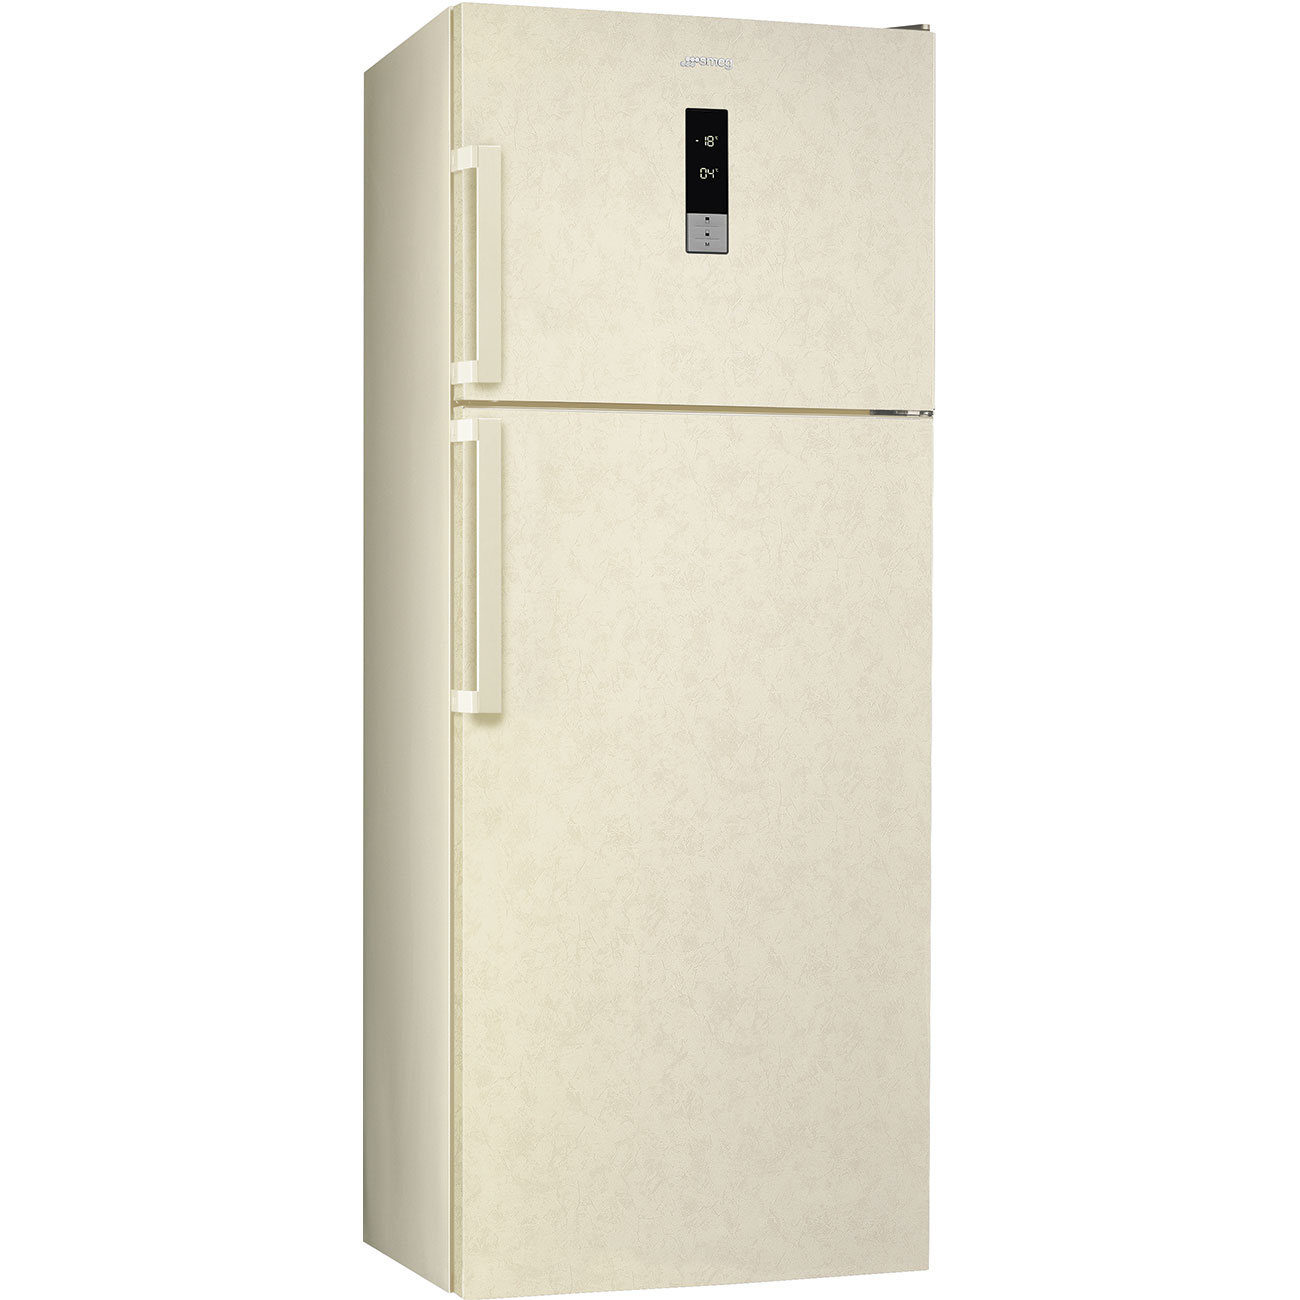 Double Door Free standing refrigerator - Smeg_1